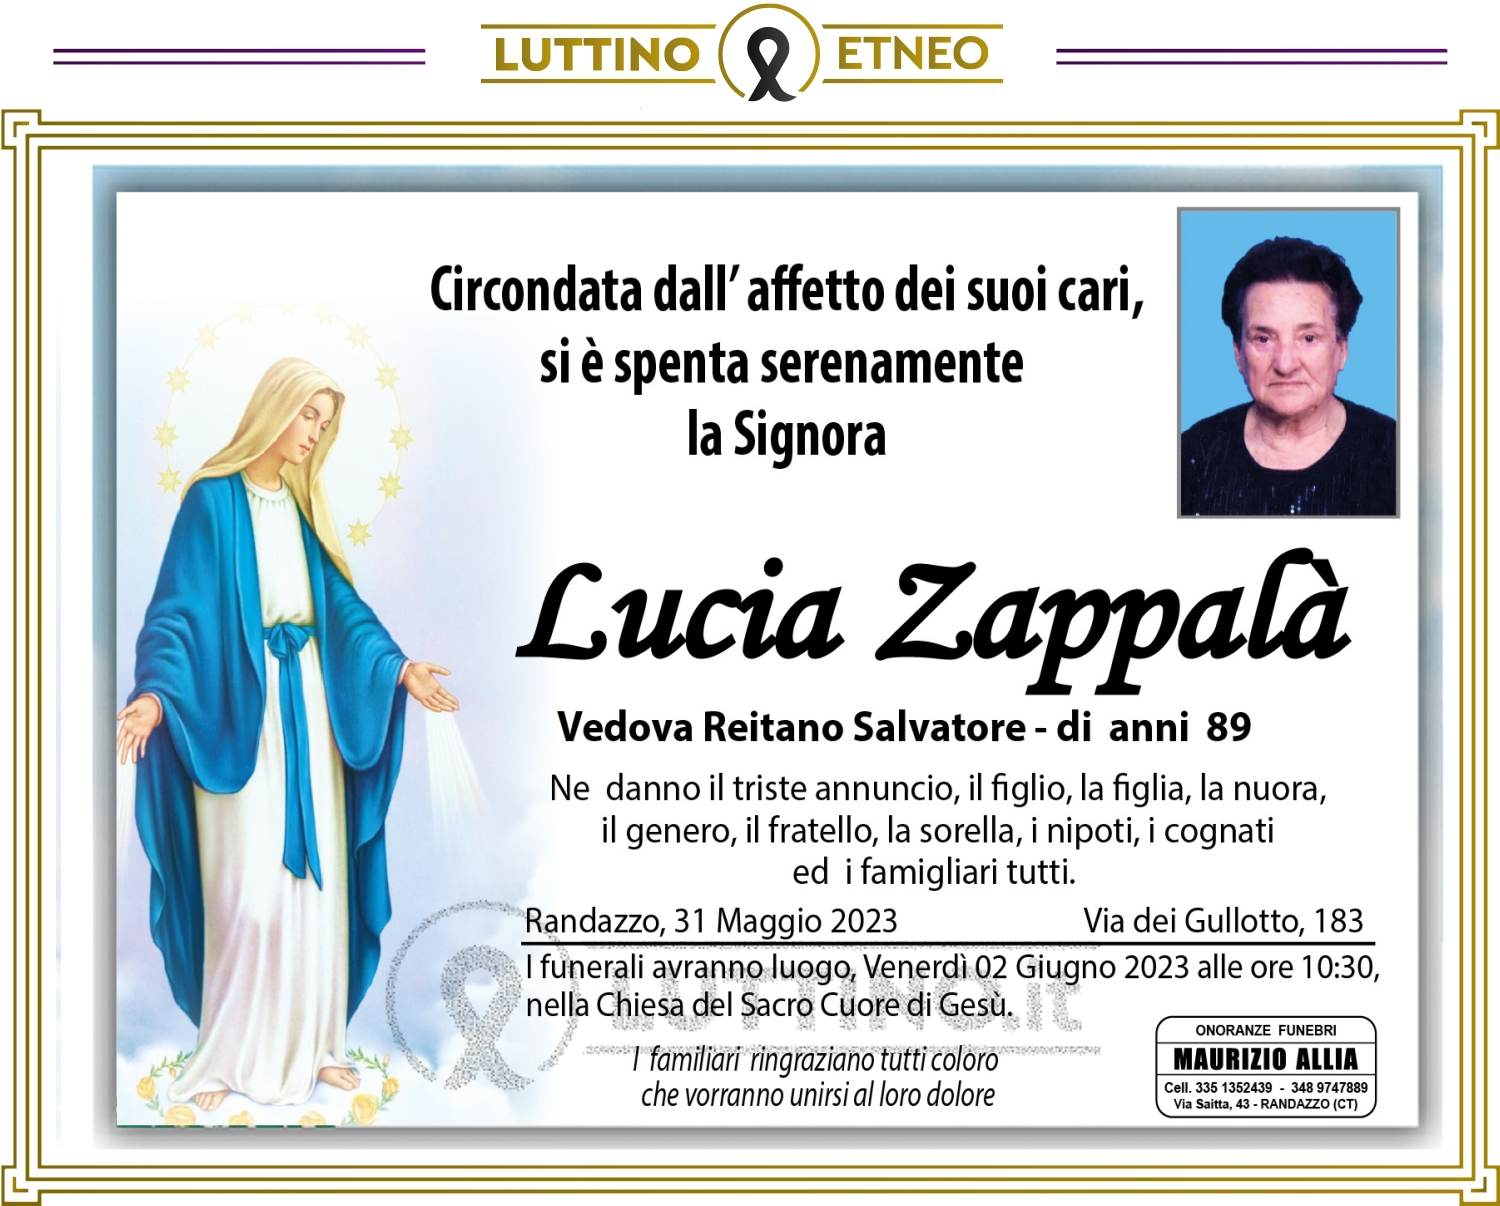 Lucia Zappalà